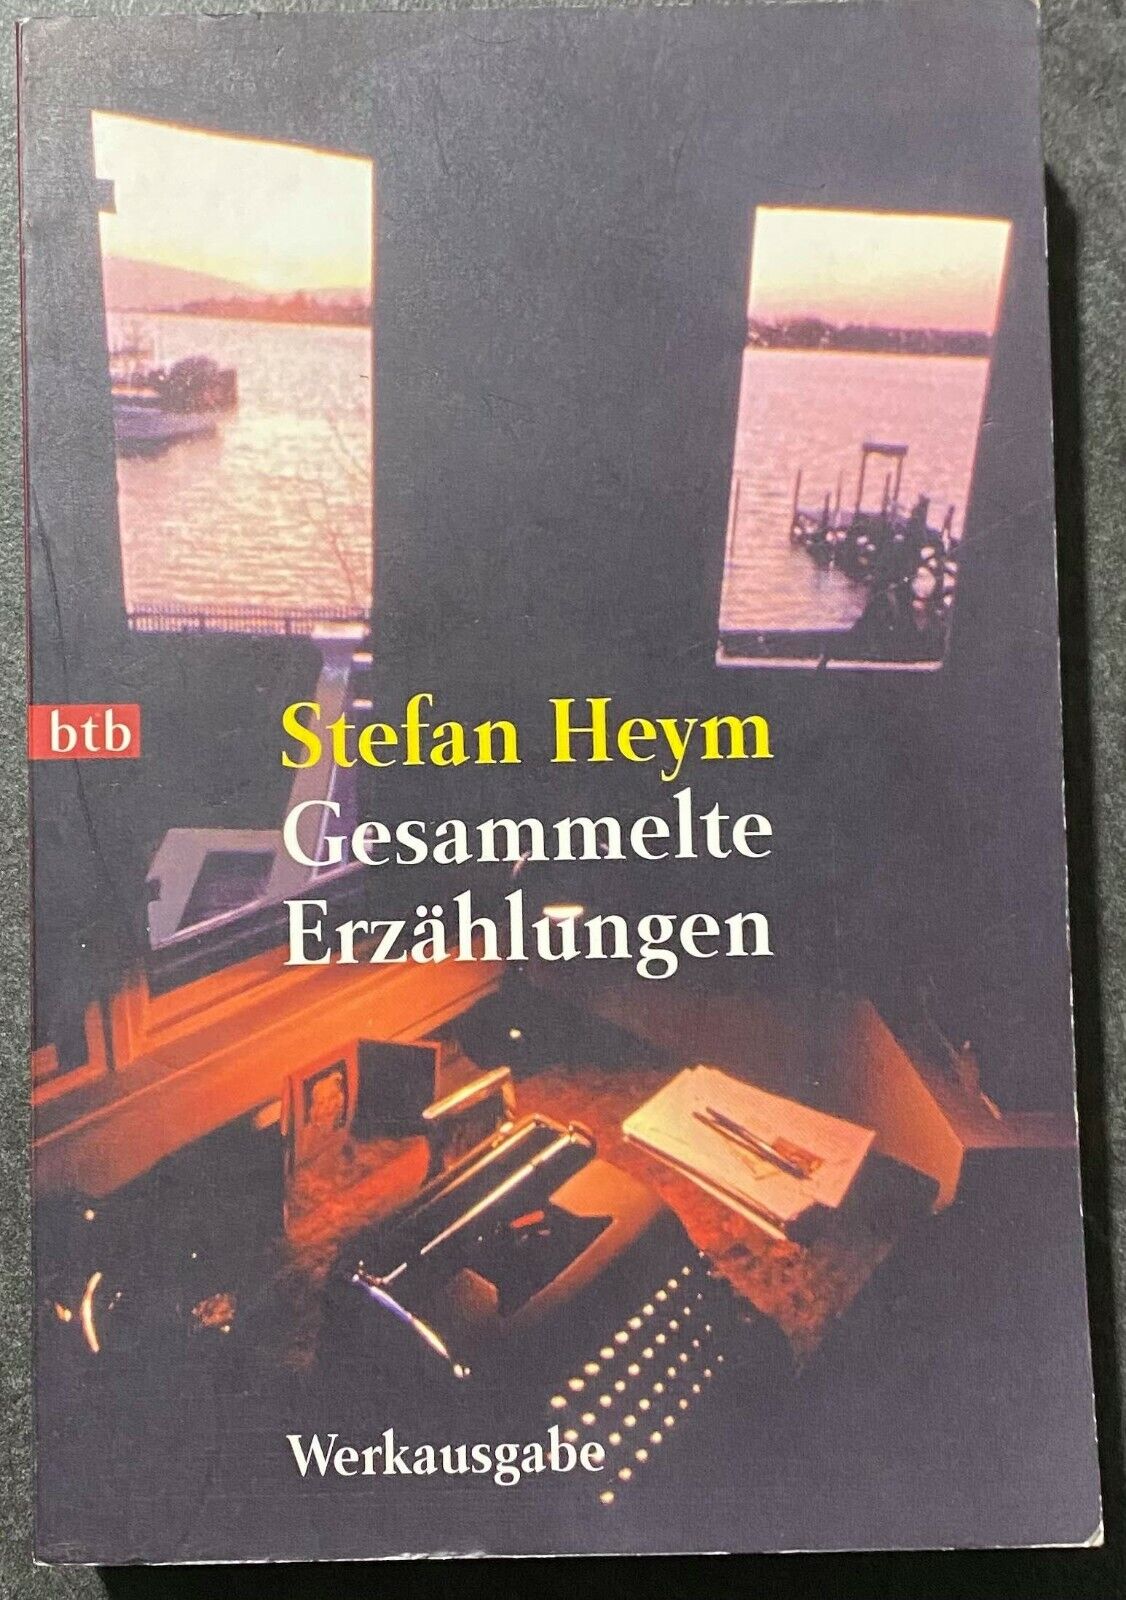 Gesammelte Erz?hlungen  - Stefan Heym - Werkausgab -1998 - M libro usato